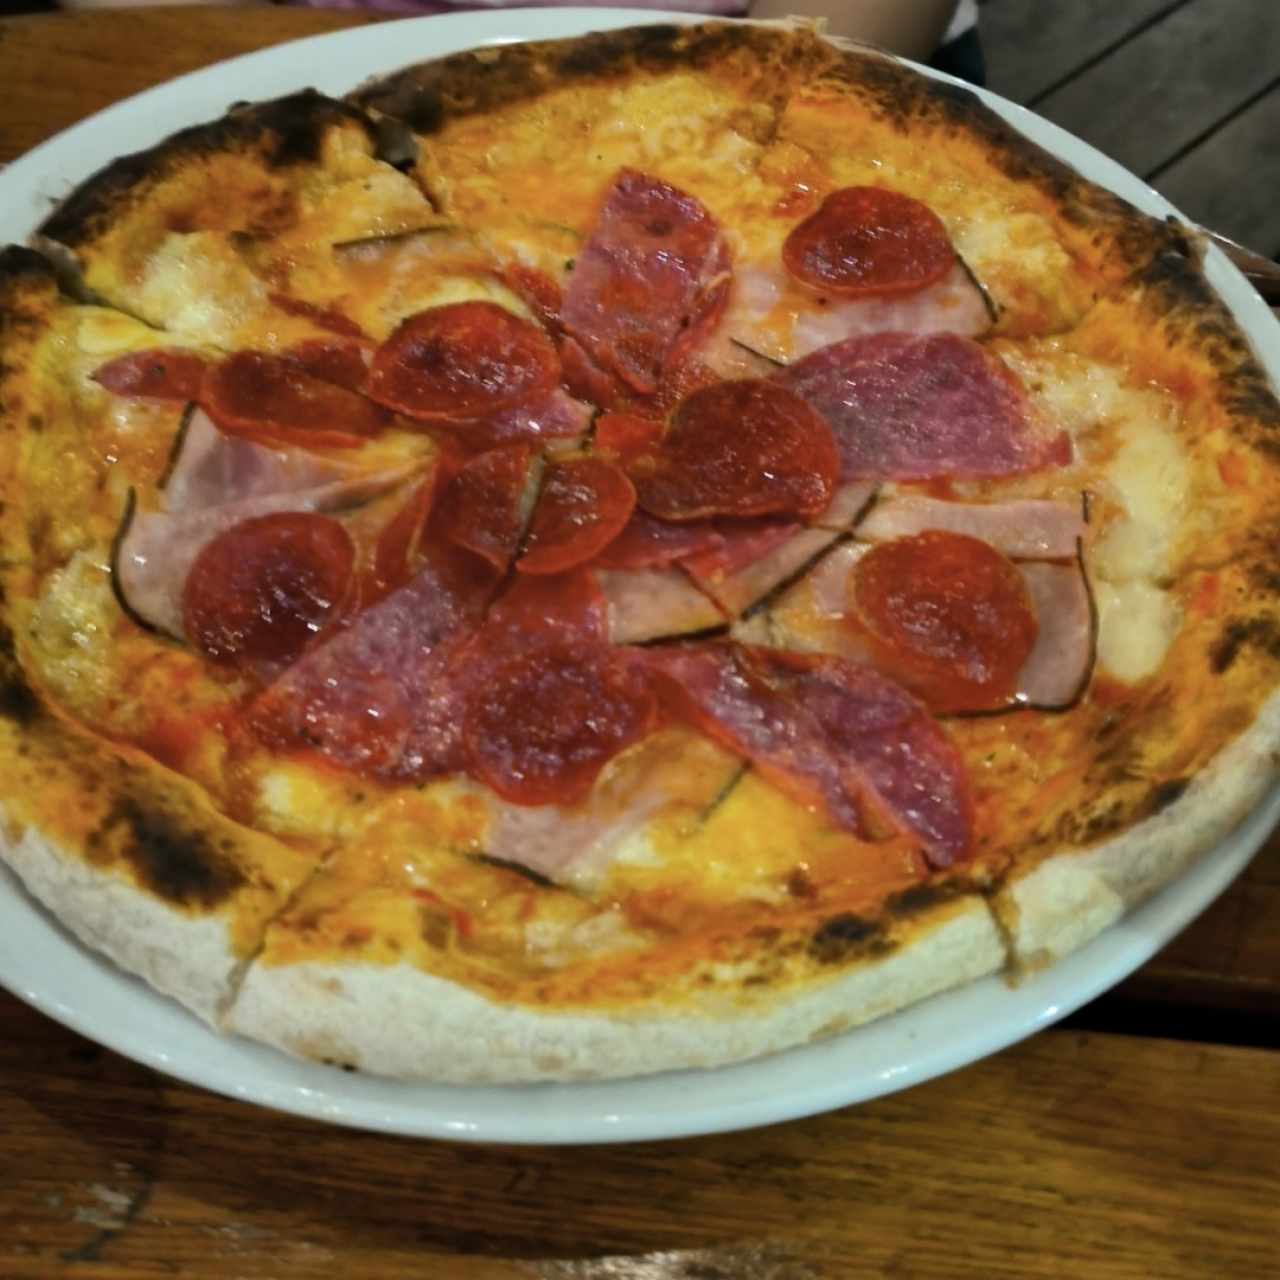 Pizza Rana Dorada